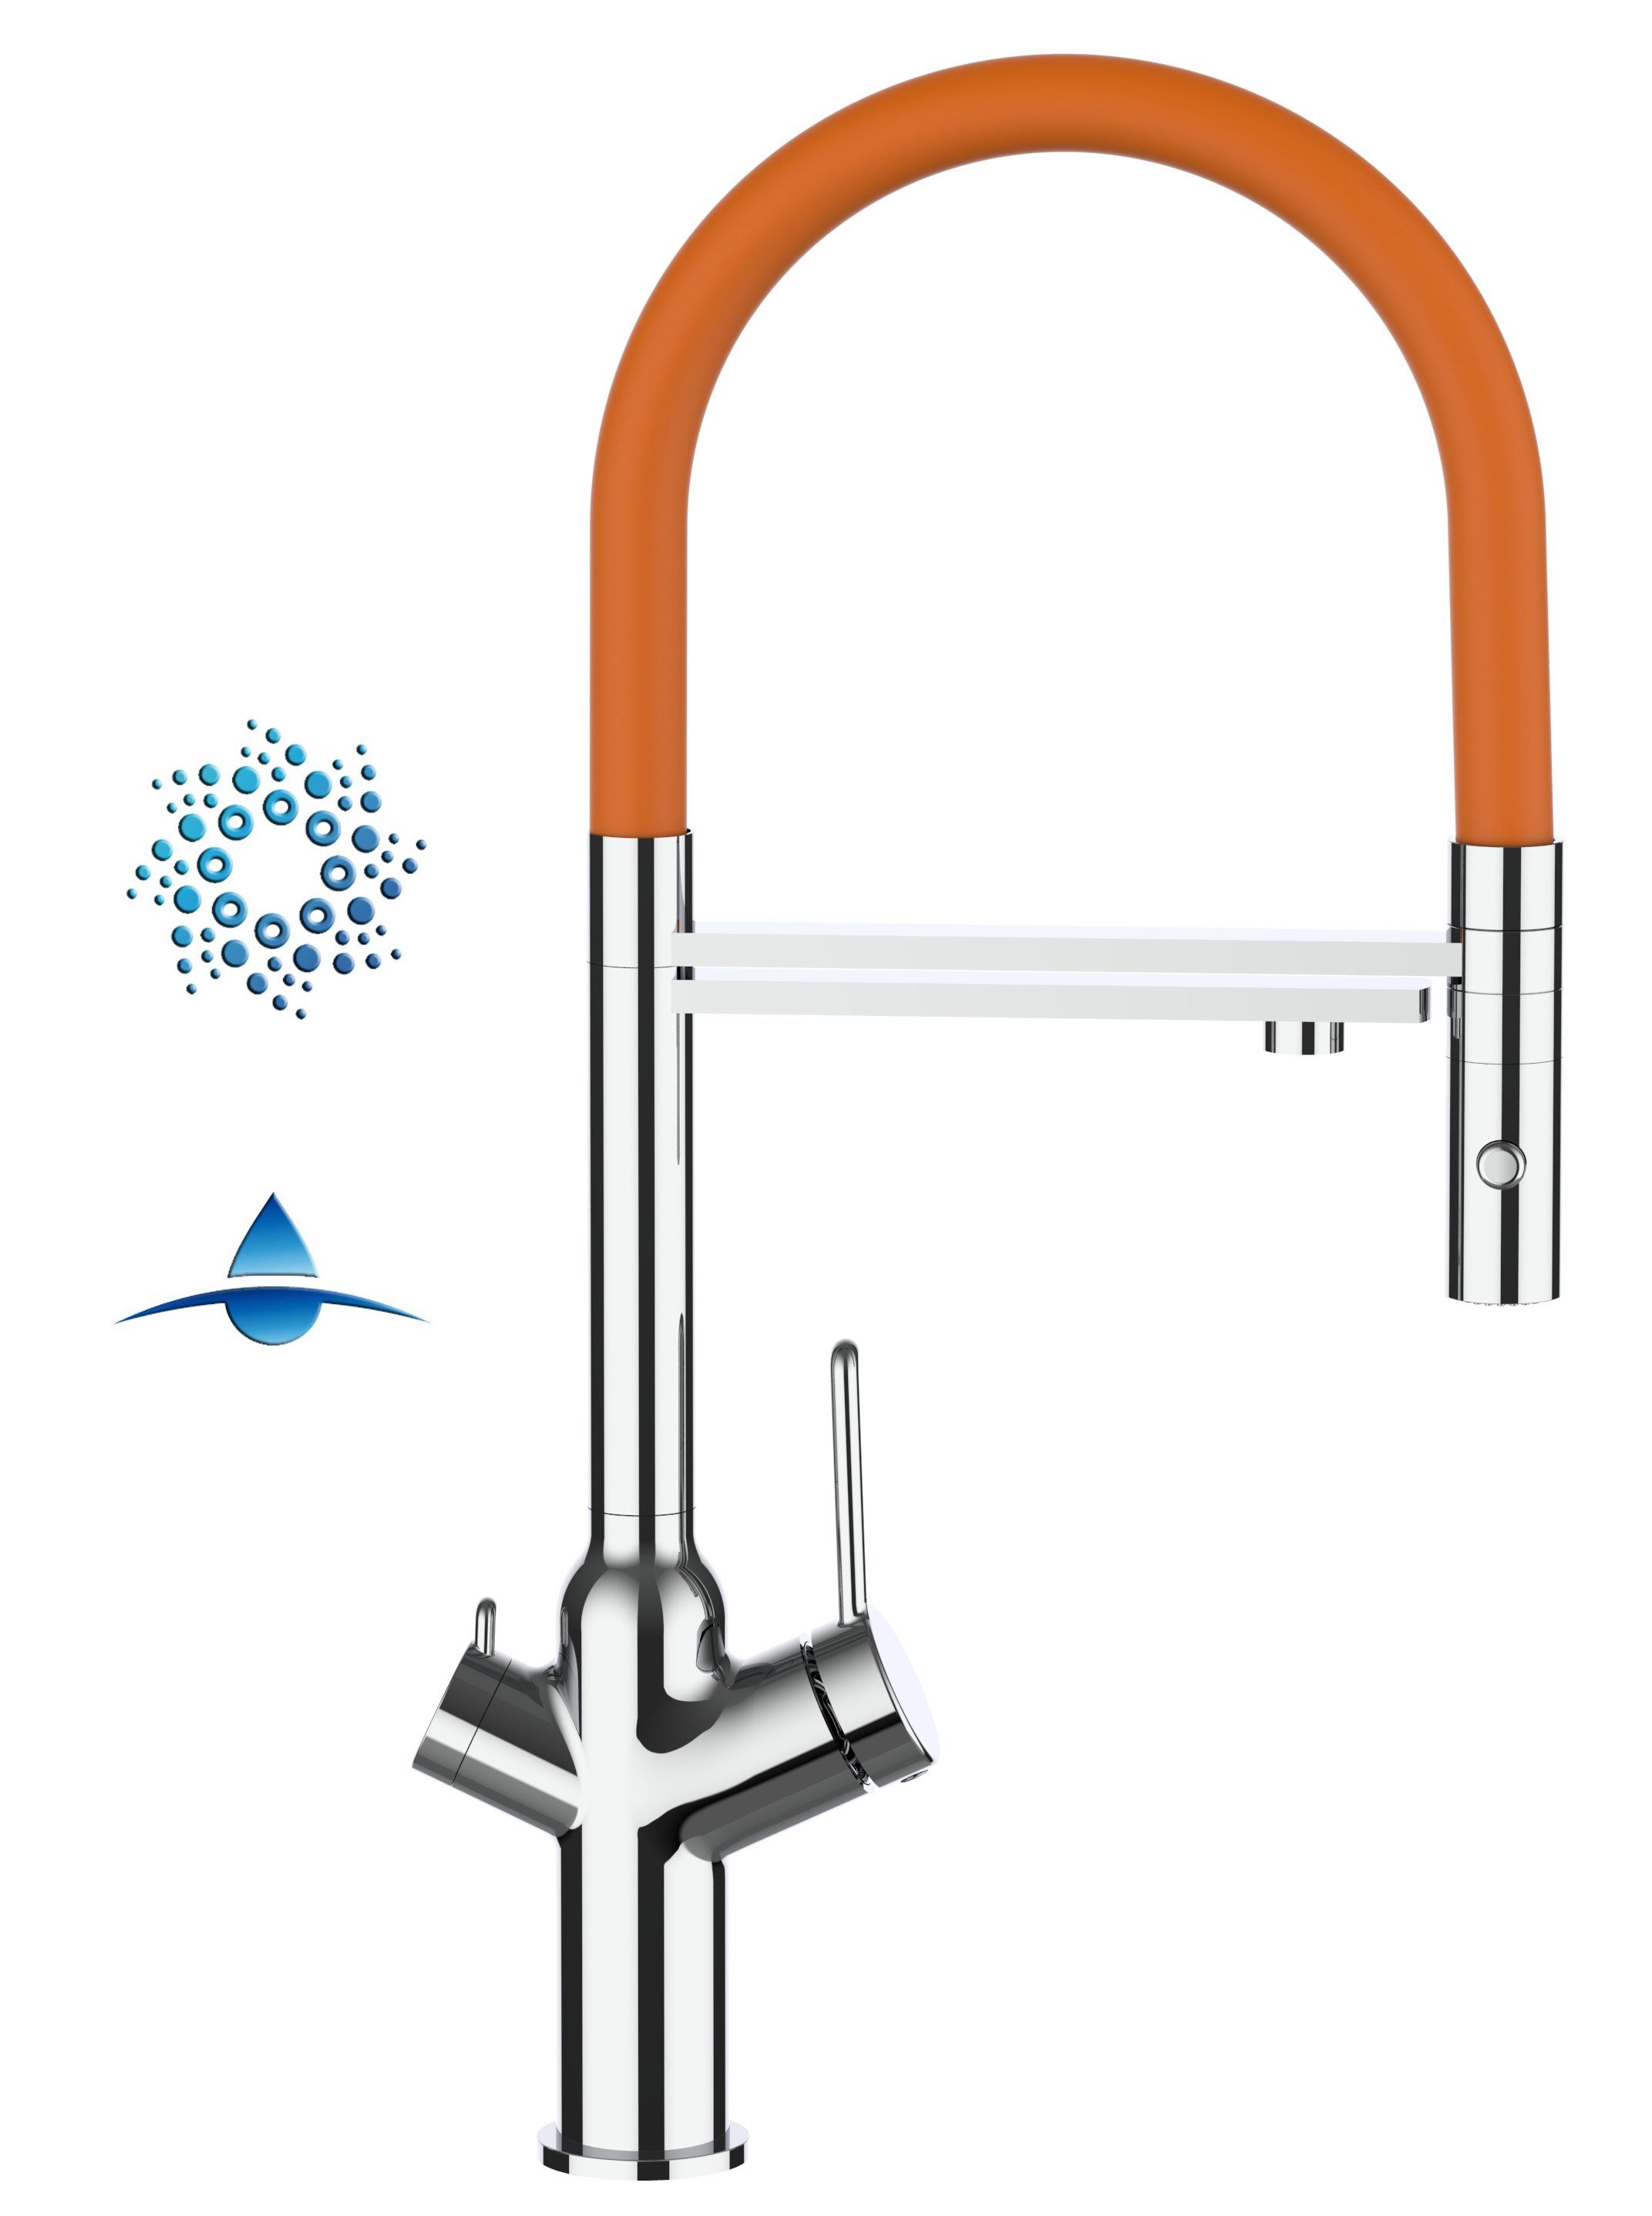 VIZIO Küchenarmatur 4-Wege Küchenarmatur für Sprudelanlagen und Wasserfiltersysteme mit 360 ° schwenkbarem Auslauf und abnehmbarer 2-strahl-Handbrause - Chrom Hochdruck, Hochwertige Verchromung, 4 Wege, Separater Filterwasser-Zulauf mit 2 Wege Umstellventil, Abnehmbare 2 Strahl Brause Orange